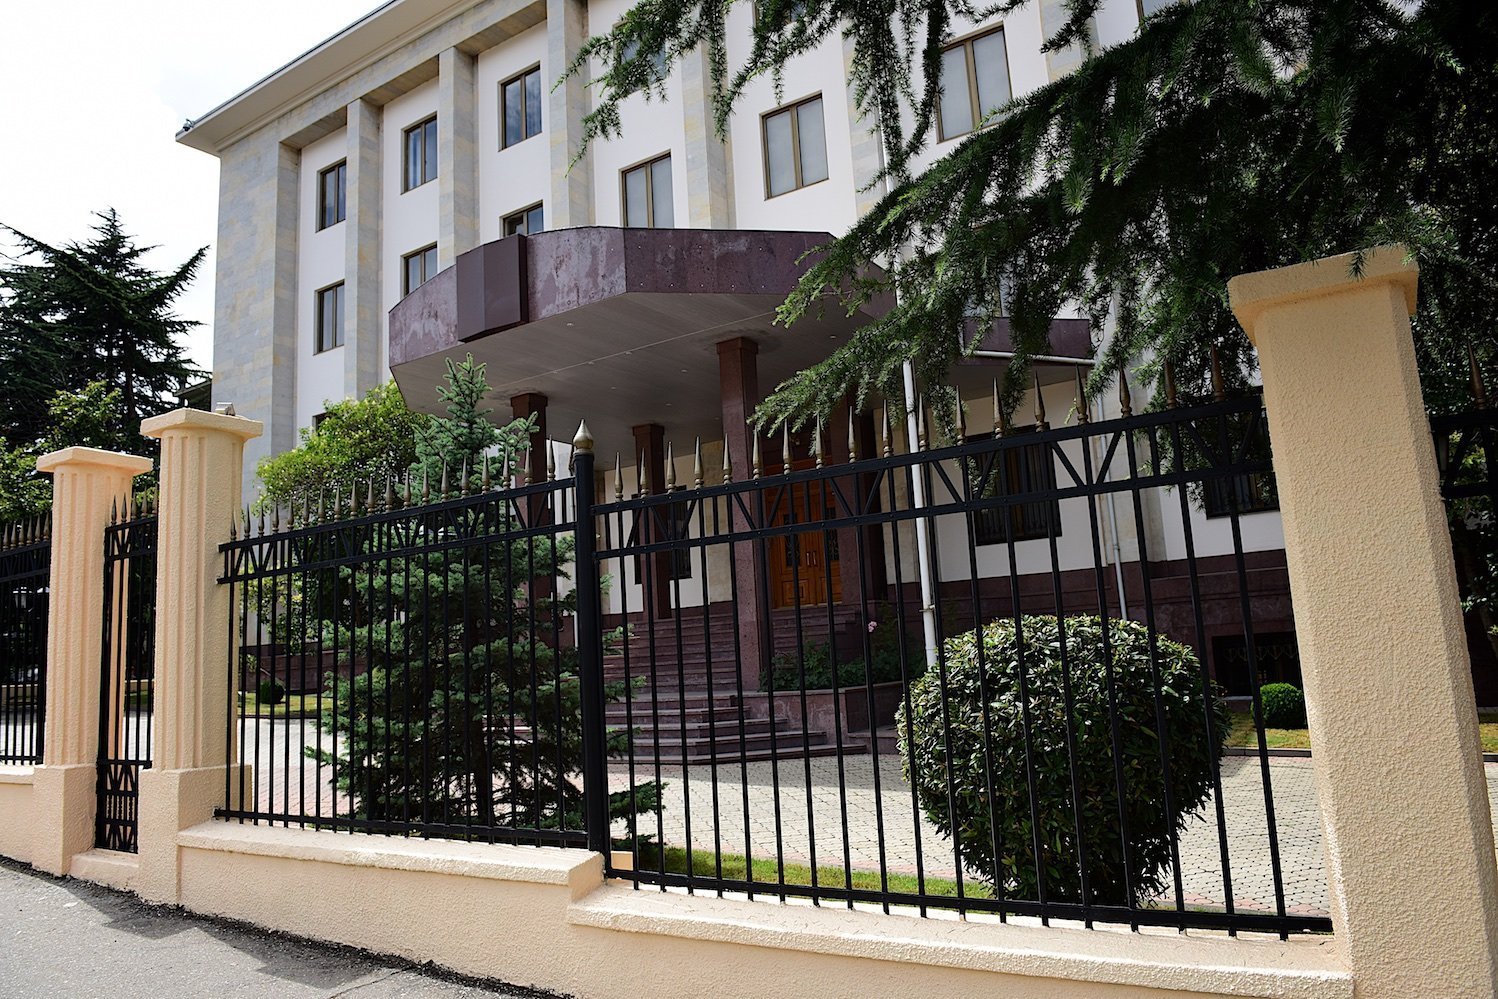 Здание секции российских интересов при посольстве Швейцарии в Грузии, где проходила встреча главы секции Вадима Горелова с жителями Грузии.